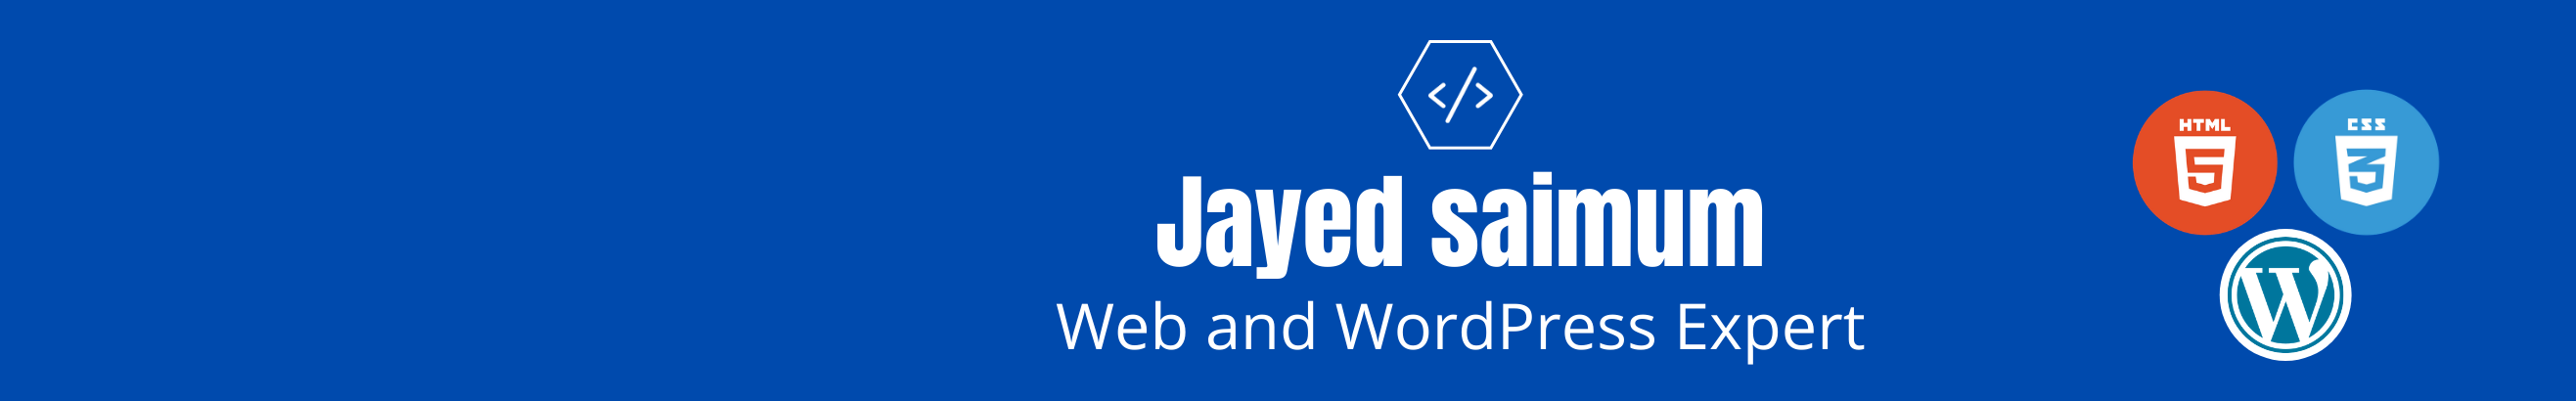 Banner de perfil de Jayed saimum